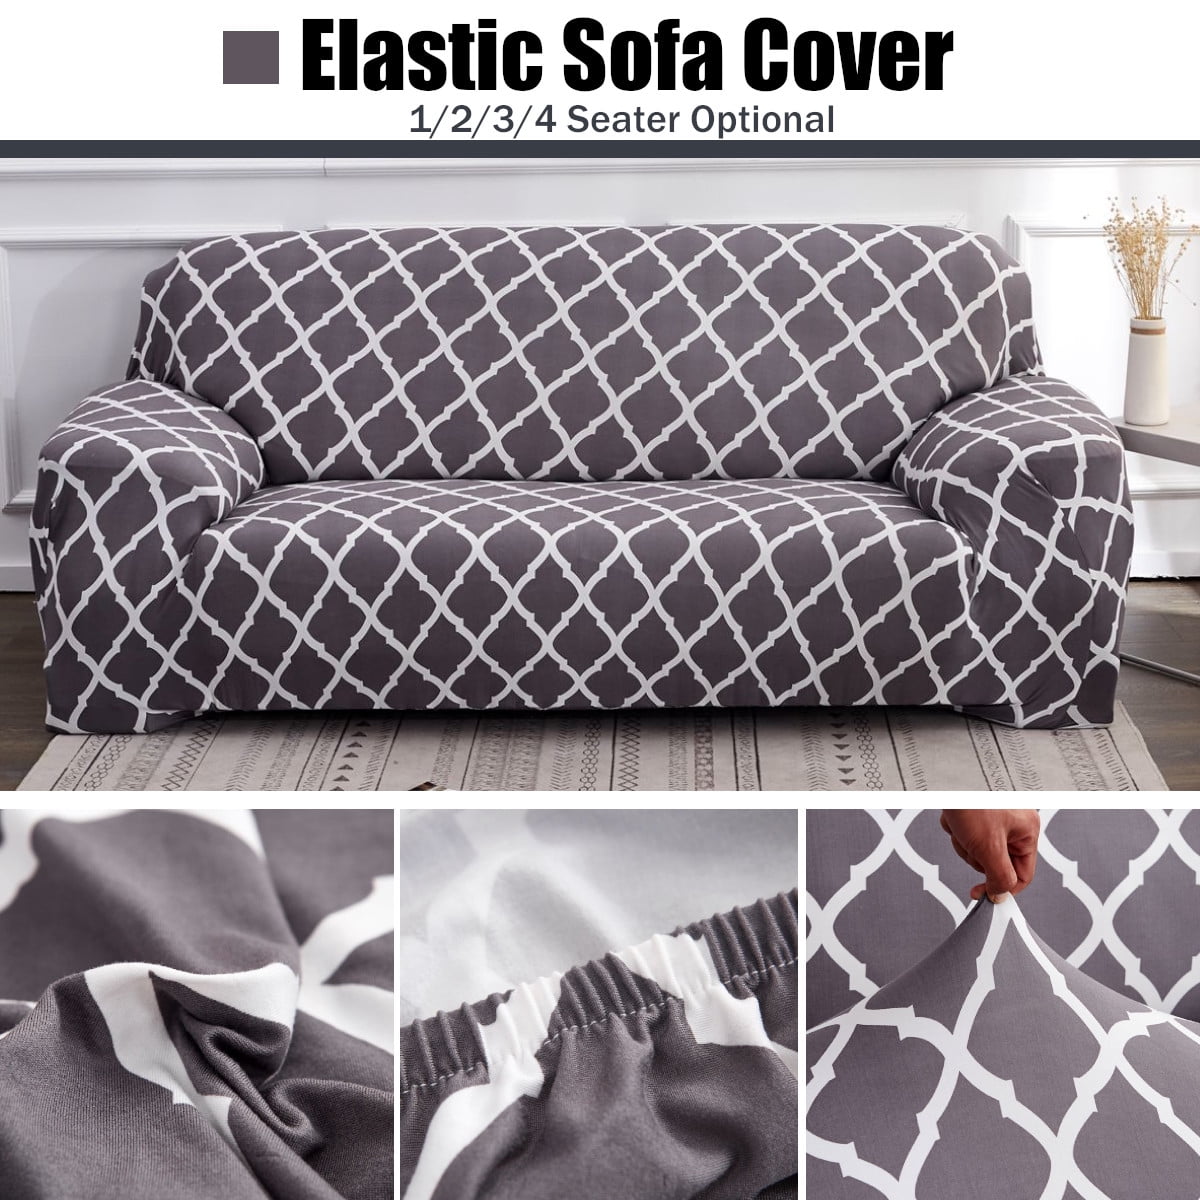 Stretch Sofa Cover Canada, How To Fix Elastic Sofa Cover